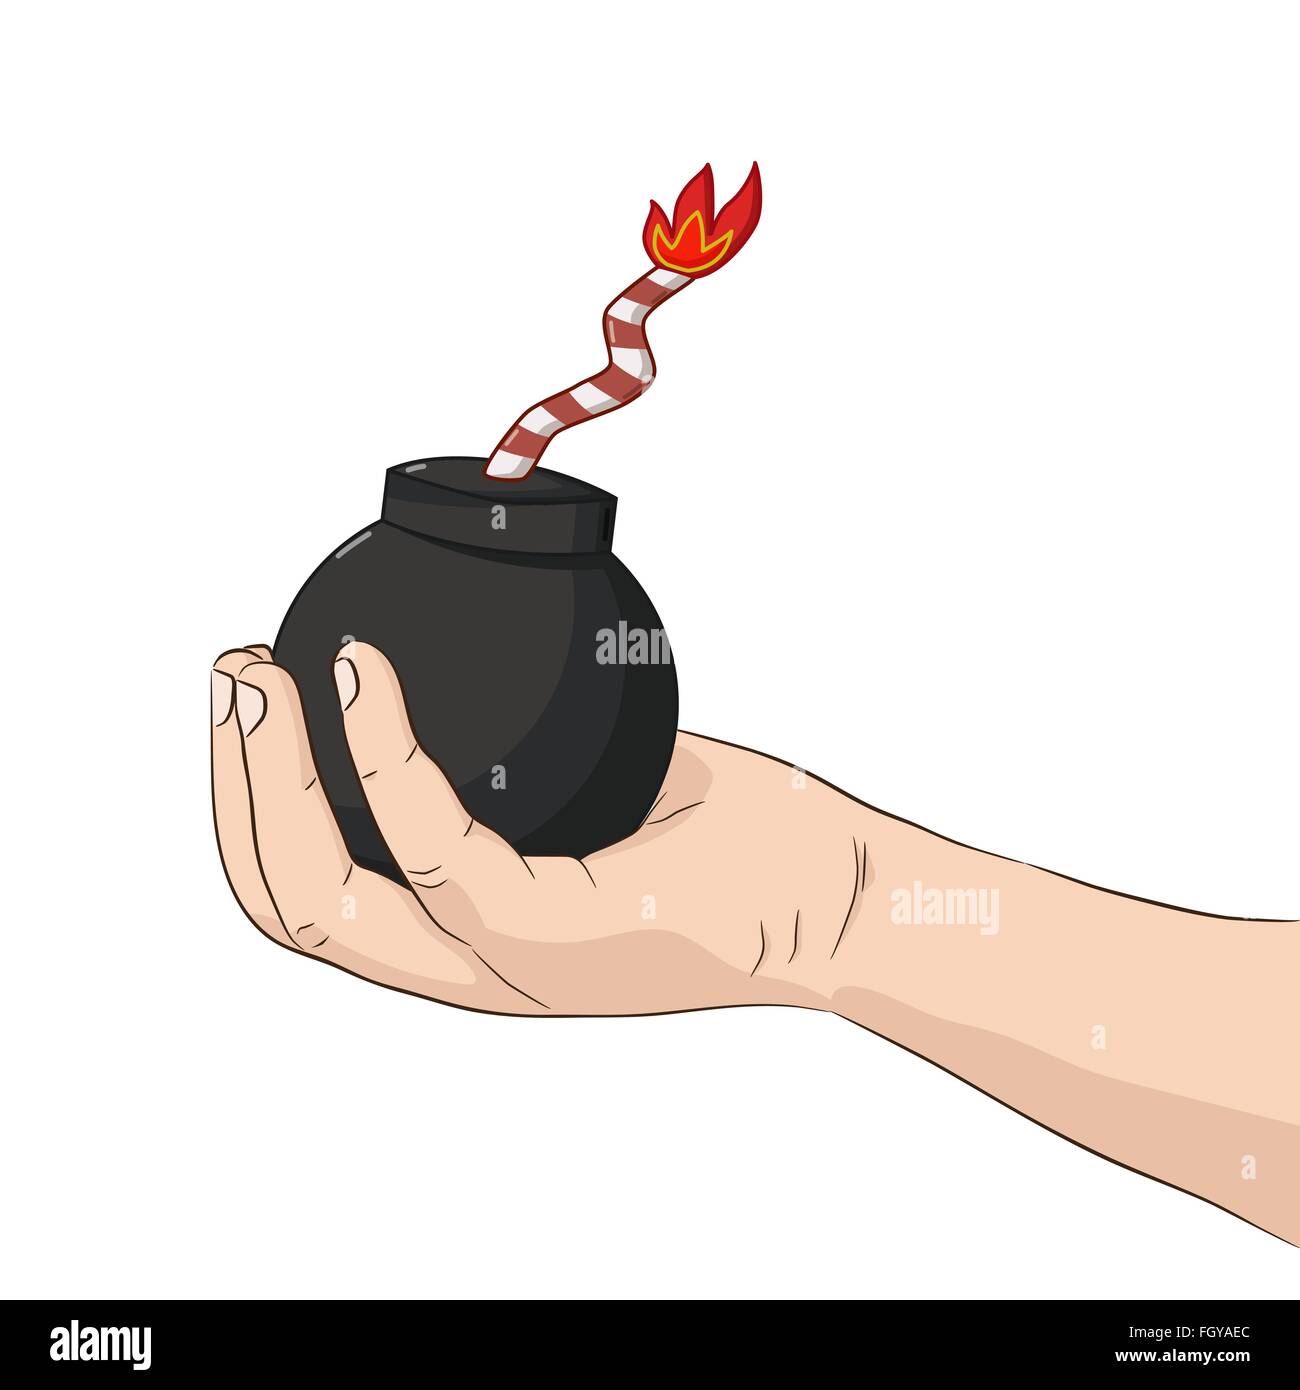 Isolierte Kind an der Hand halten Sie eine Bombe mit einem brennenden Docht Stock Vektor